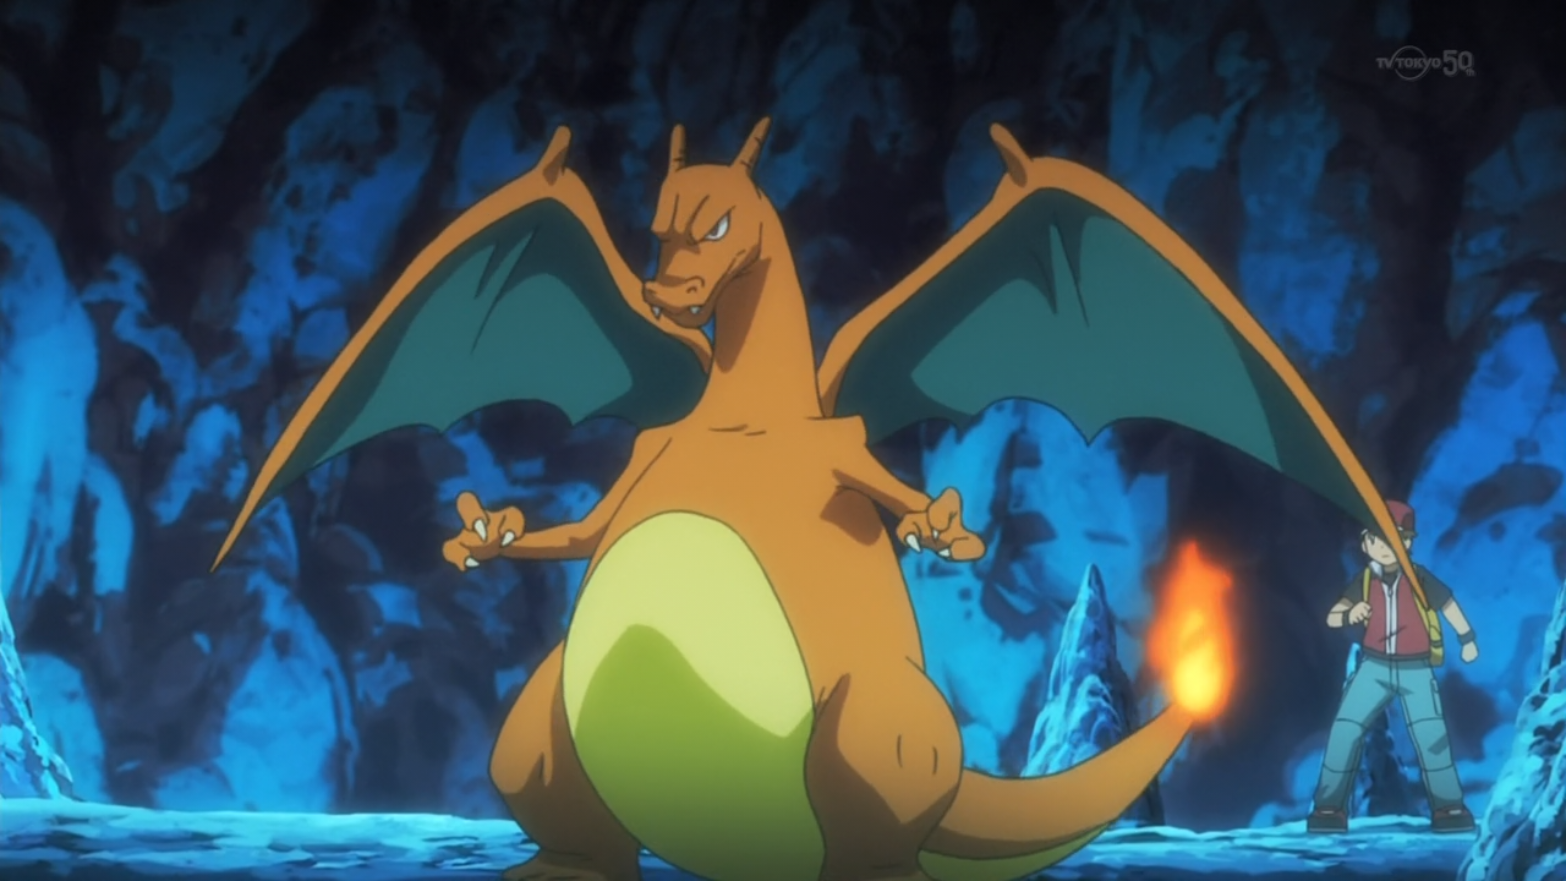 História Pokémon: O fogo de Charmander. - História escrita por